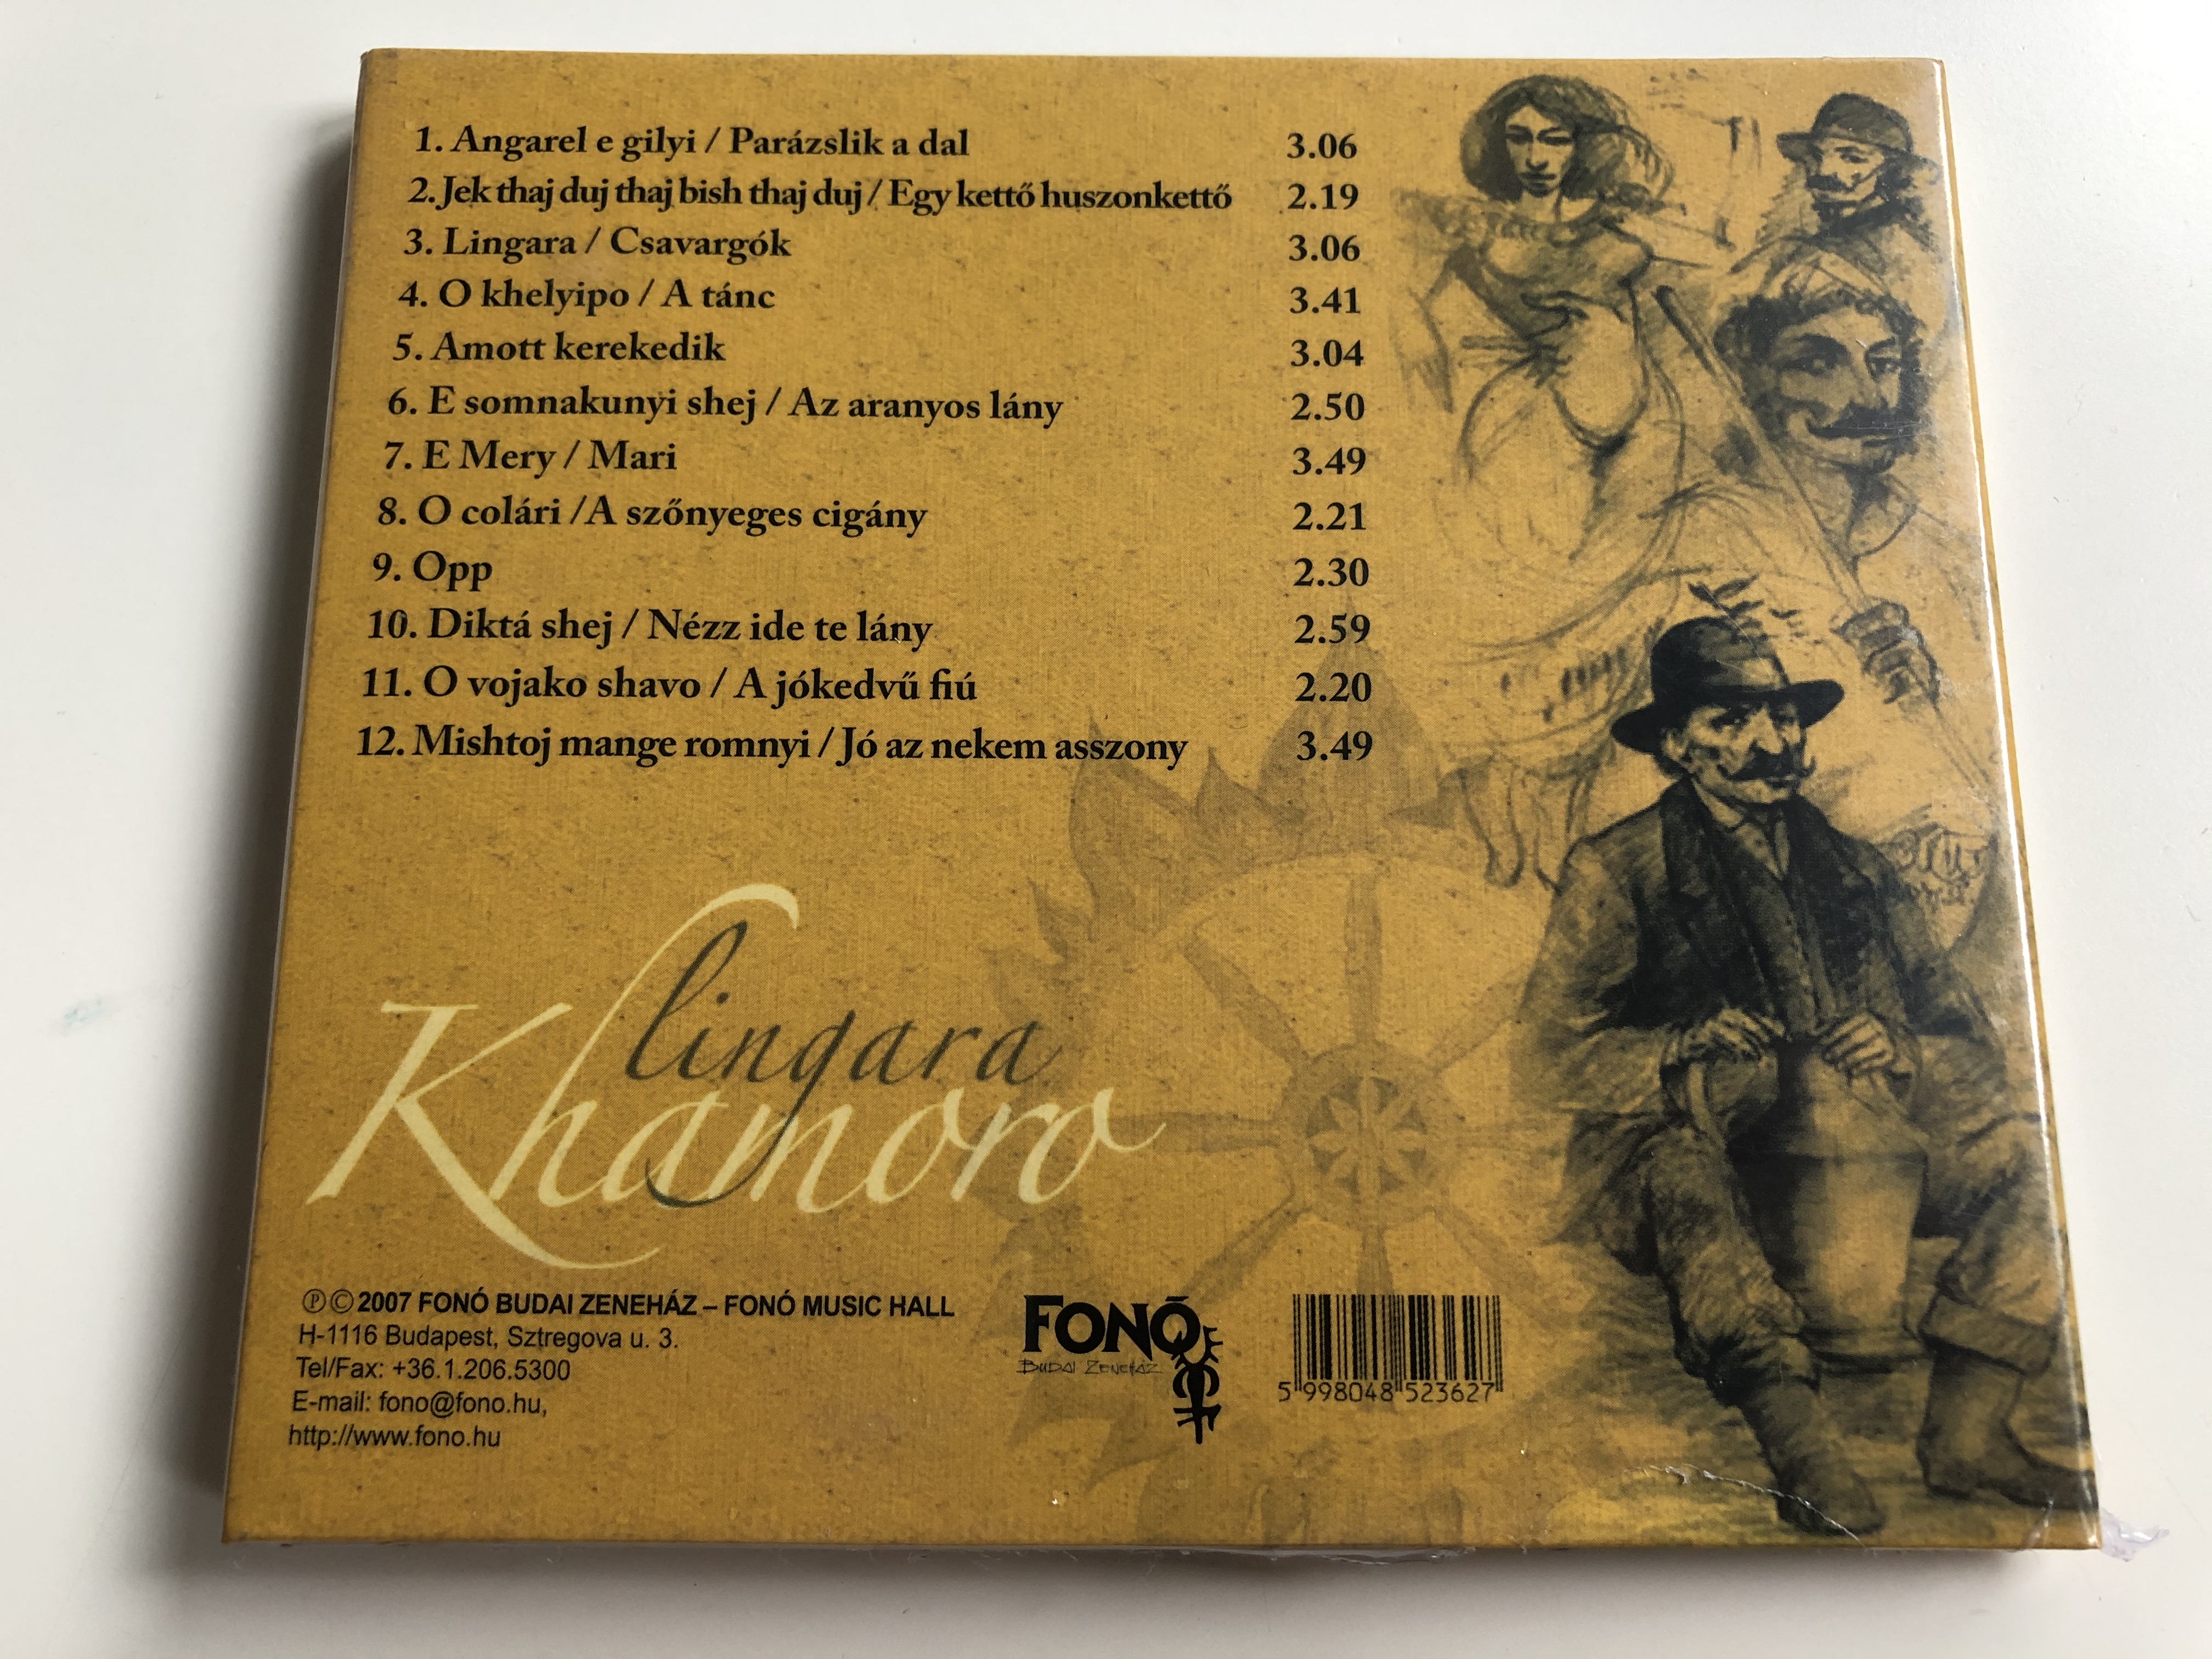 lingara-khamoro-magyarorszagi-cigany-nepzene-gipsy-folk-music-from-hungary-fon-records-audio-cd-2007-fa-236-2-2-.jpg